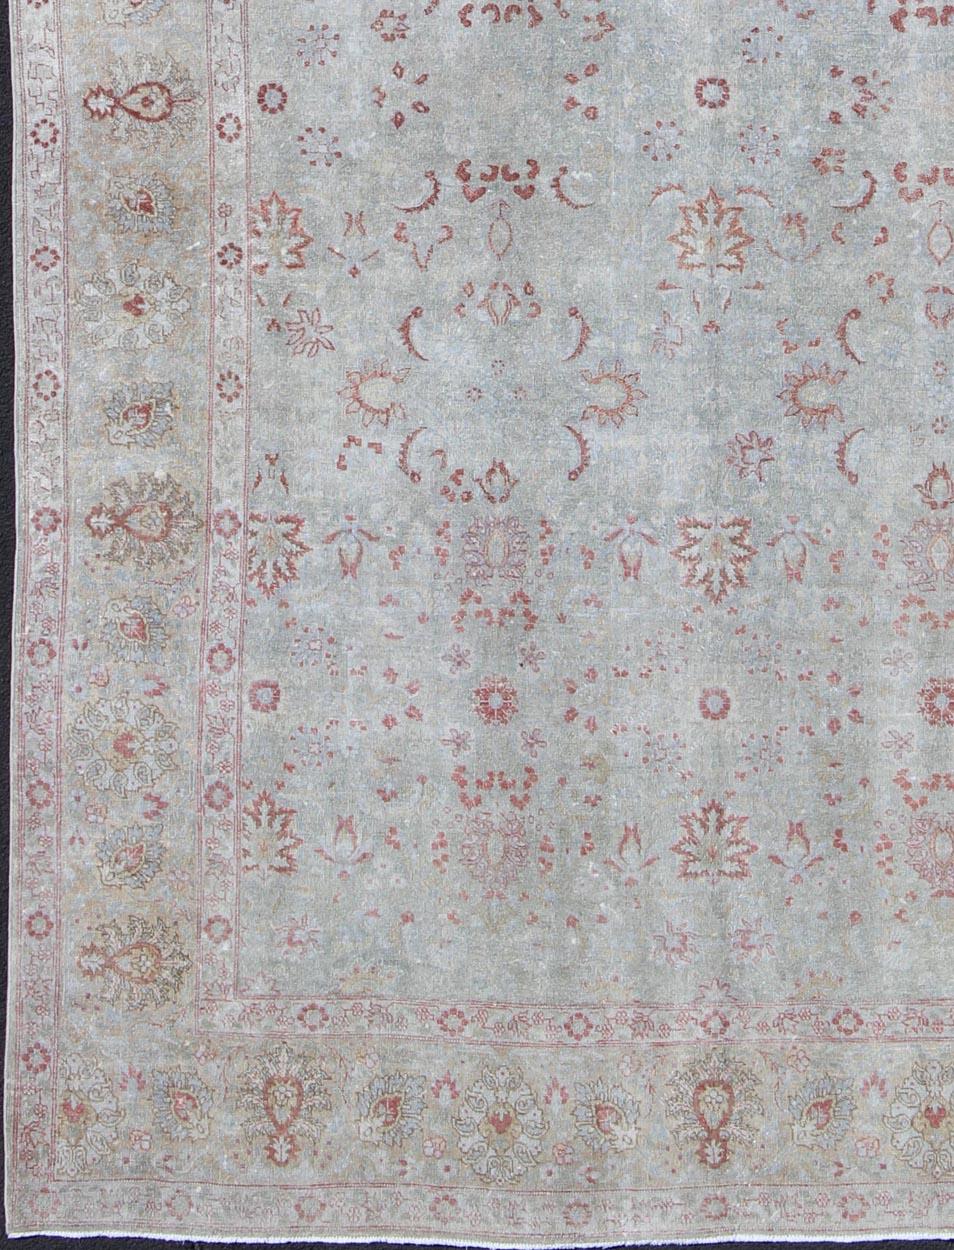 Hellblauer antiker persischer Täbriz-Teppich mit floralem Muster und einem Hauch von Rot, Teppich dan-g77, Herkunftsland / Typ: Iran / Täbris, um 1920

Dieser antike persische Täbriz-Teppich aus dem frühen 20. Jahrhundert zeichnet sich durch